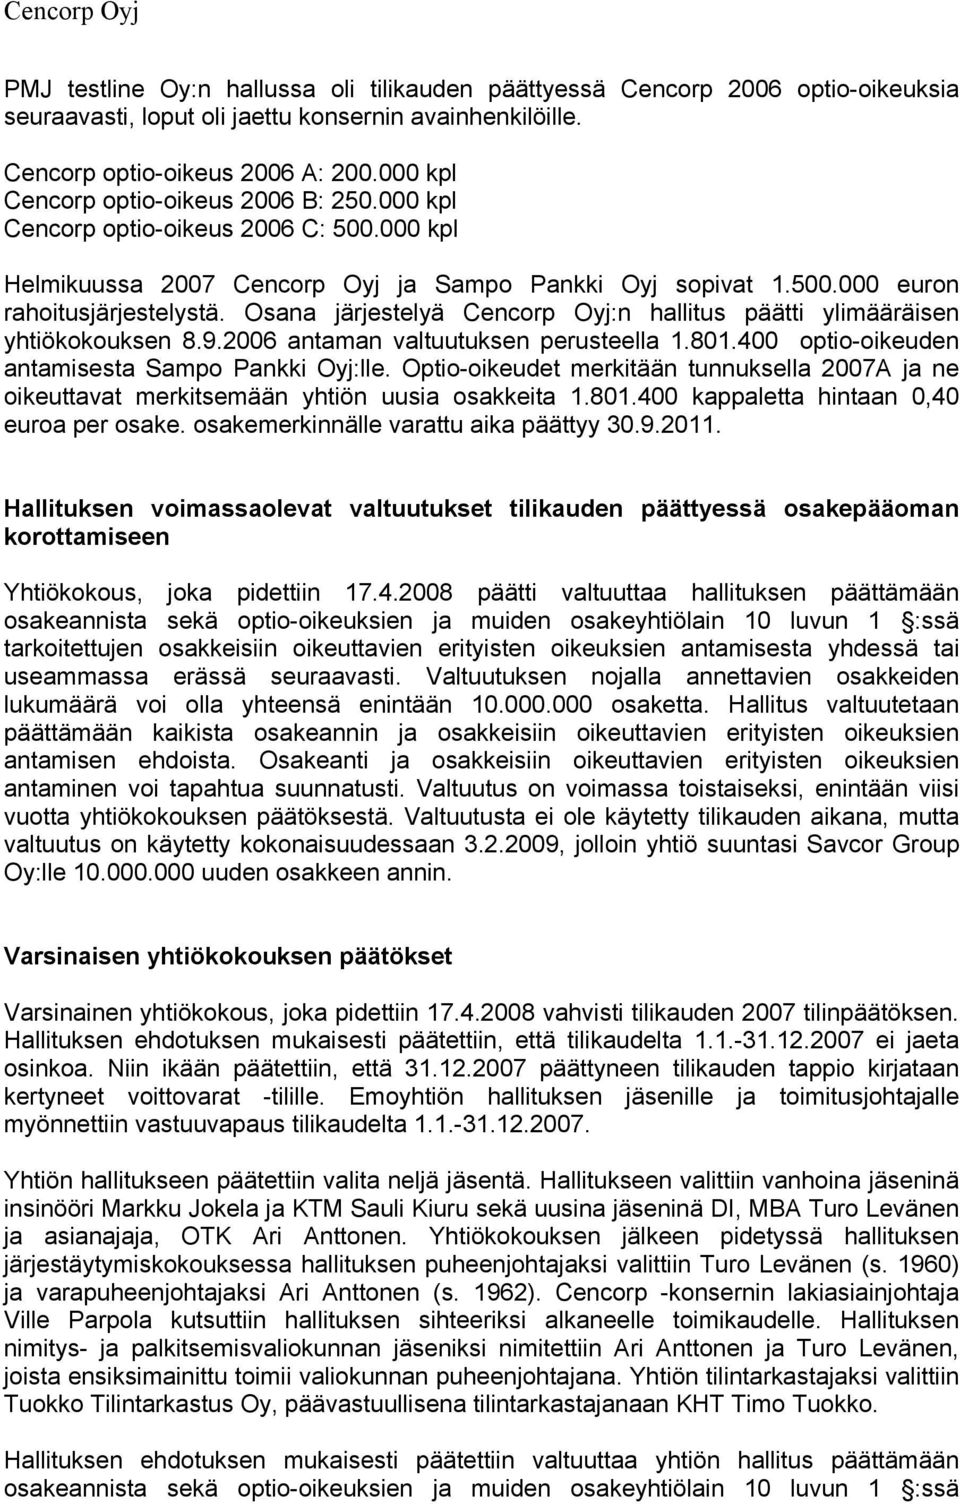 Osana järjestelyä Cencorp Oyj:n hallitus päätti ylimääräisen yhtiökokouksen 8.9.2006 antaman valtuutuksen perusteella 1.801.400 optio-oikeuden antamisesta Sampo Pankki Oyj:lle.